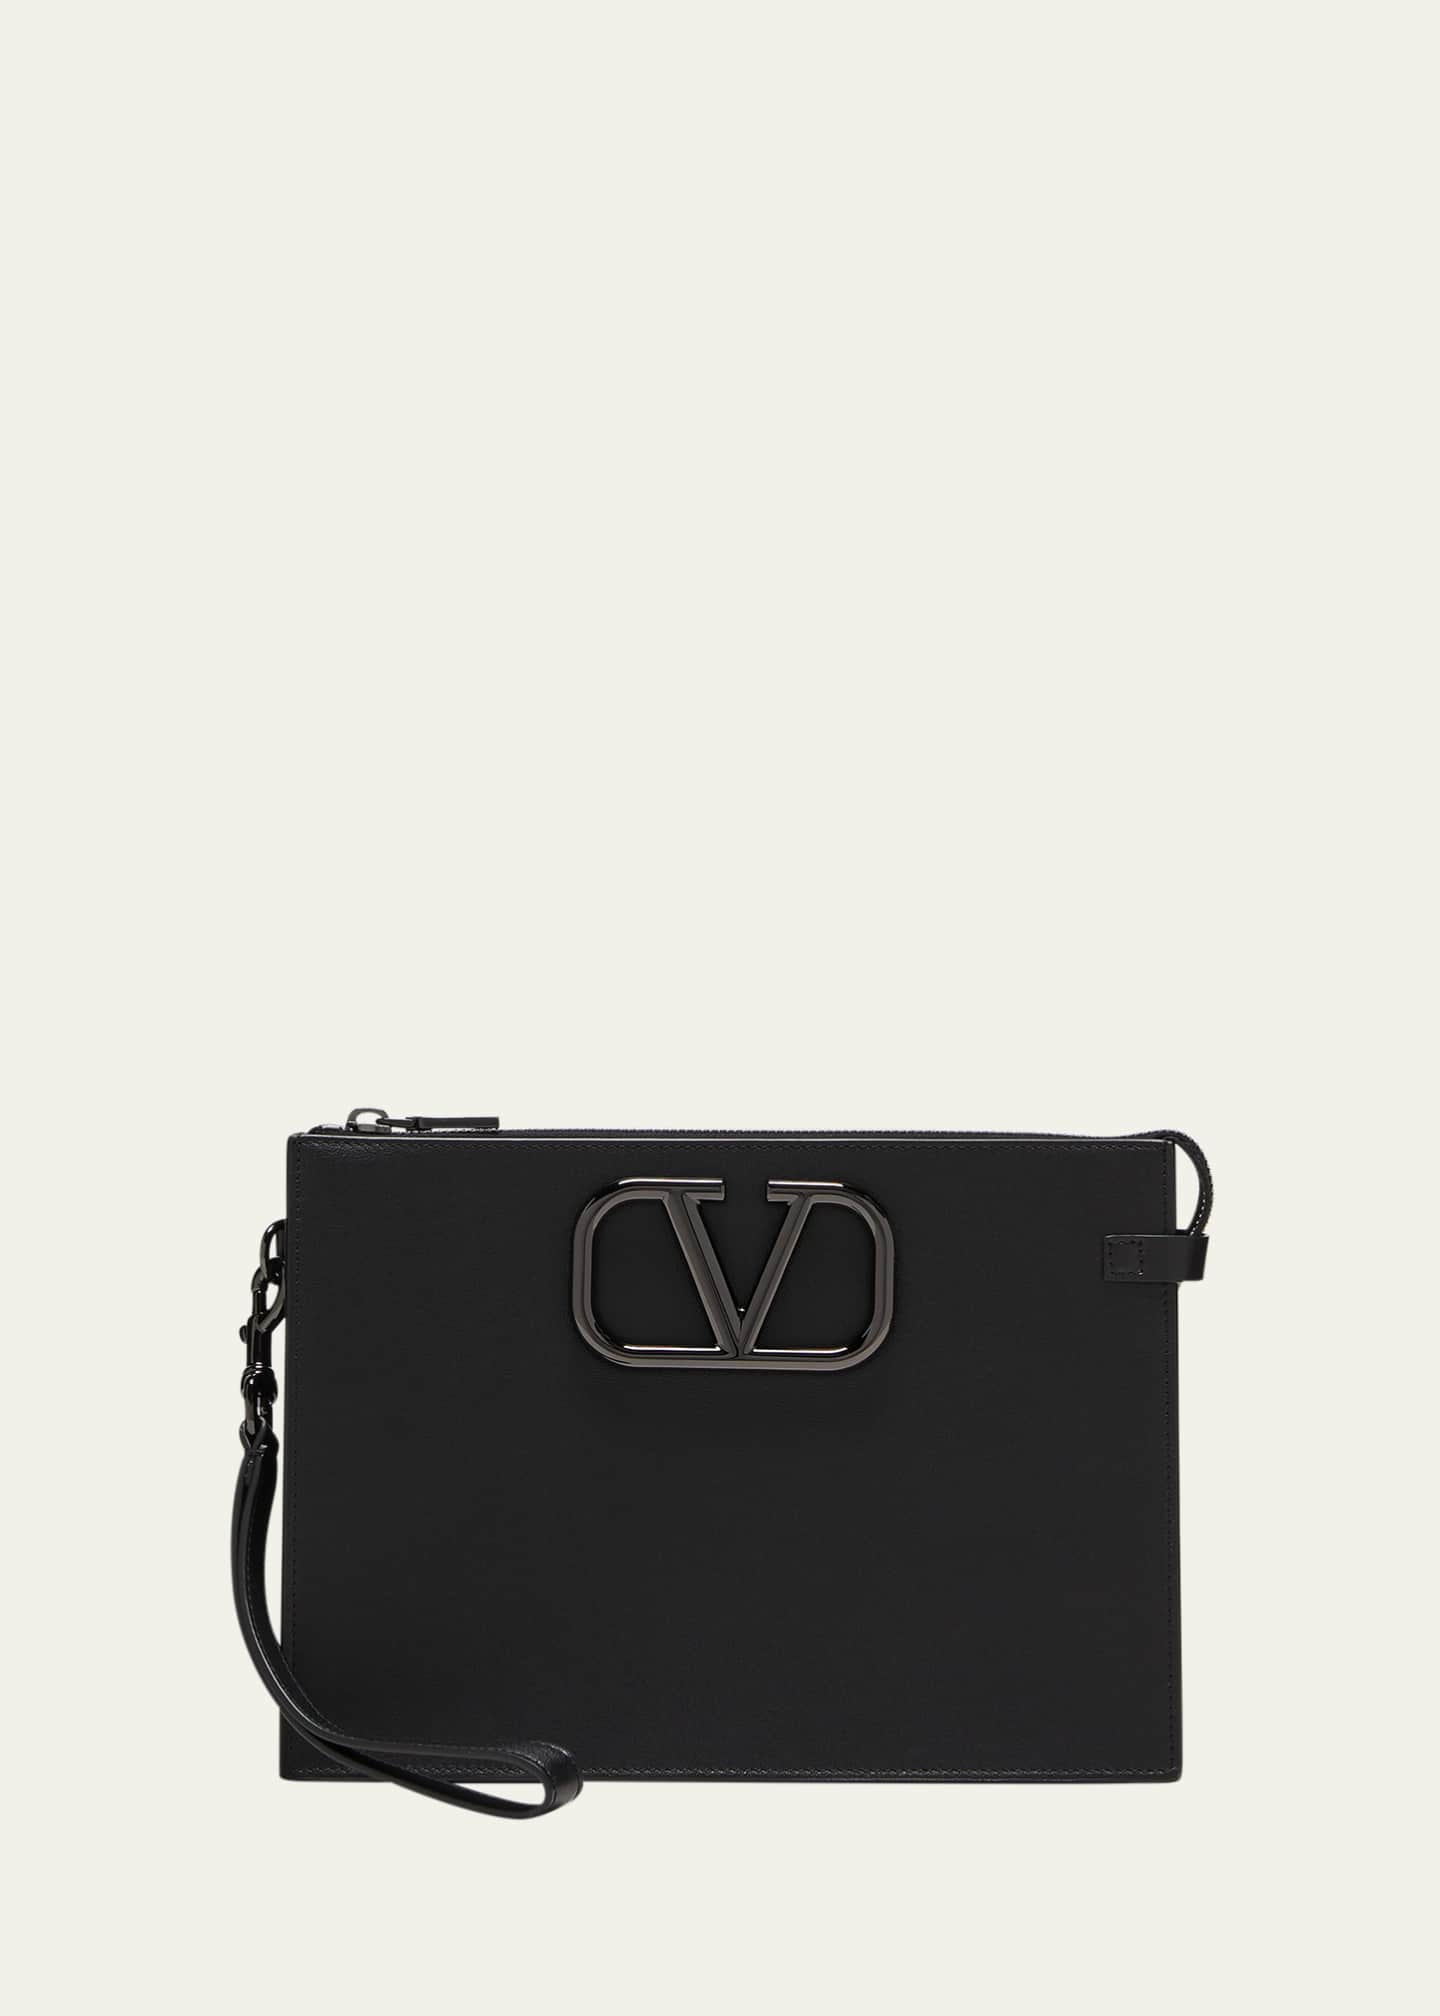 VLOGO leather shoulder bag